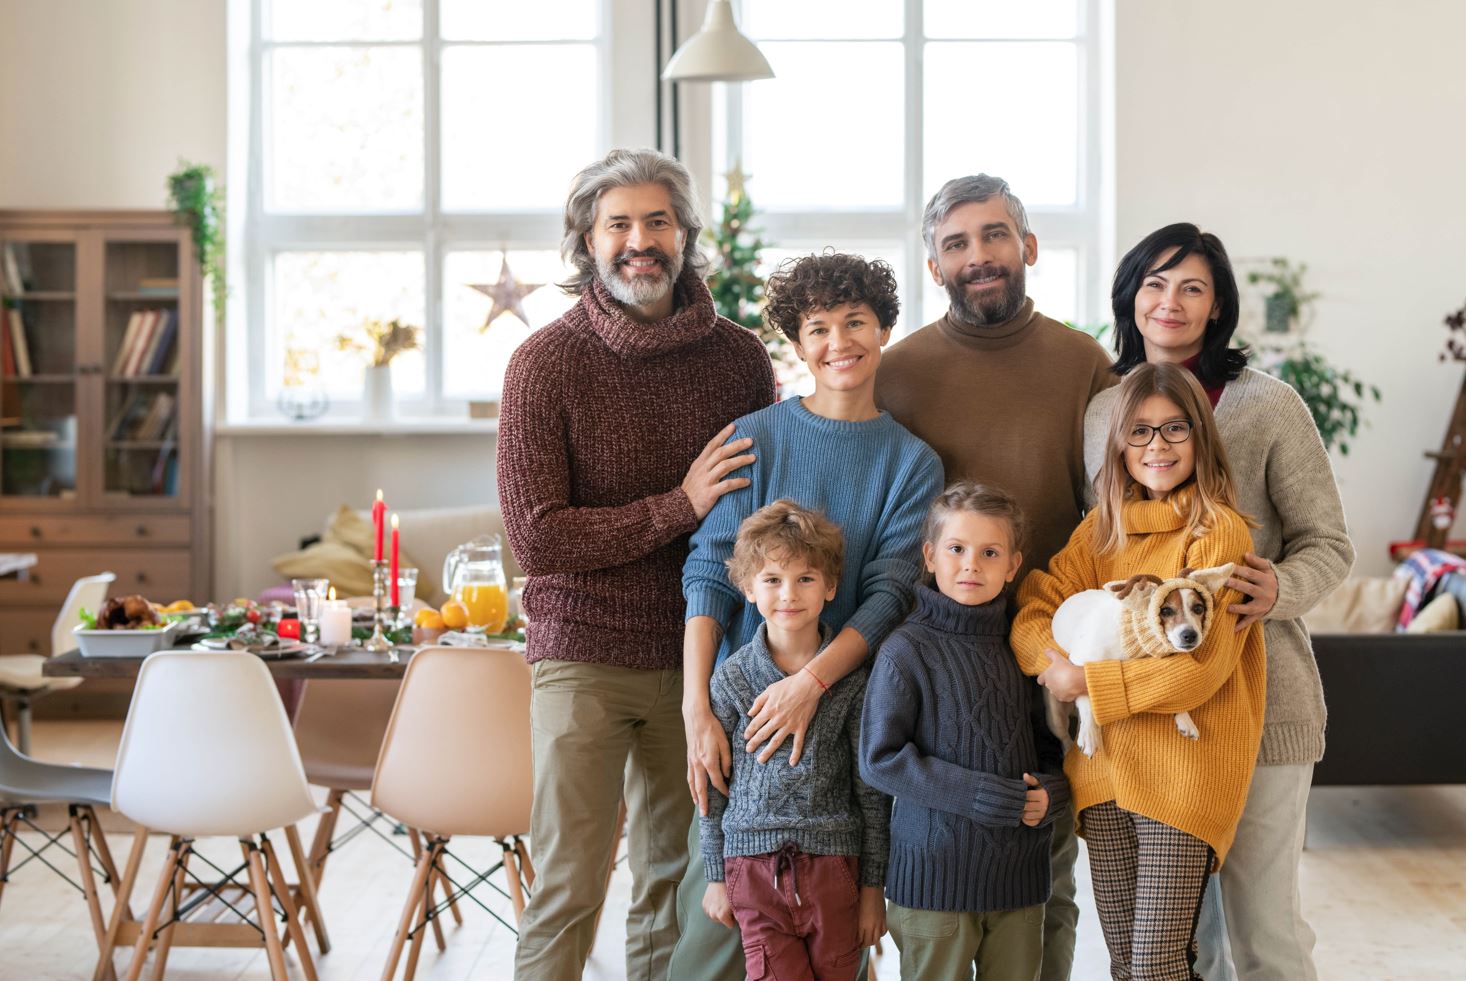 6 ventajas de ser familia numerosa (y cómo organizarse cuando somos muchos)